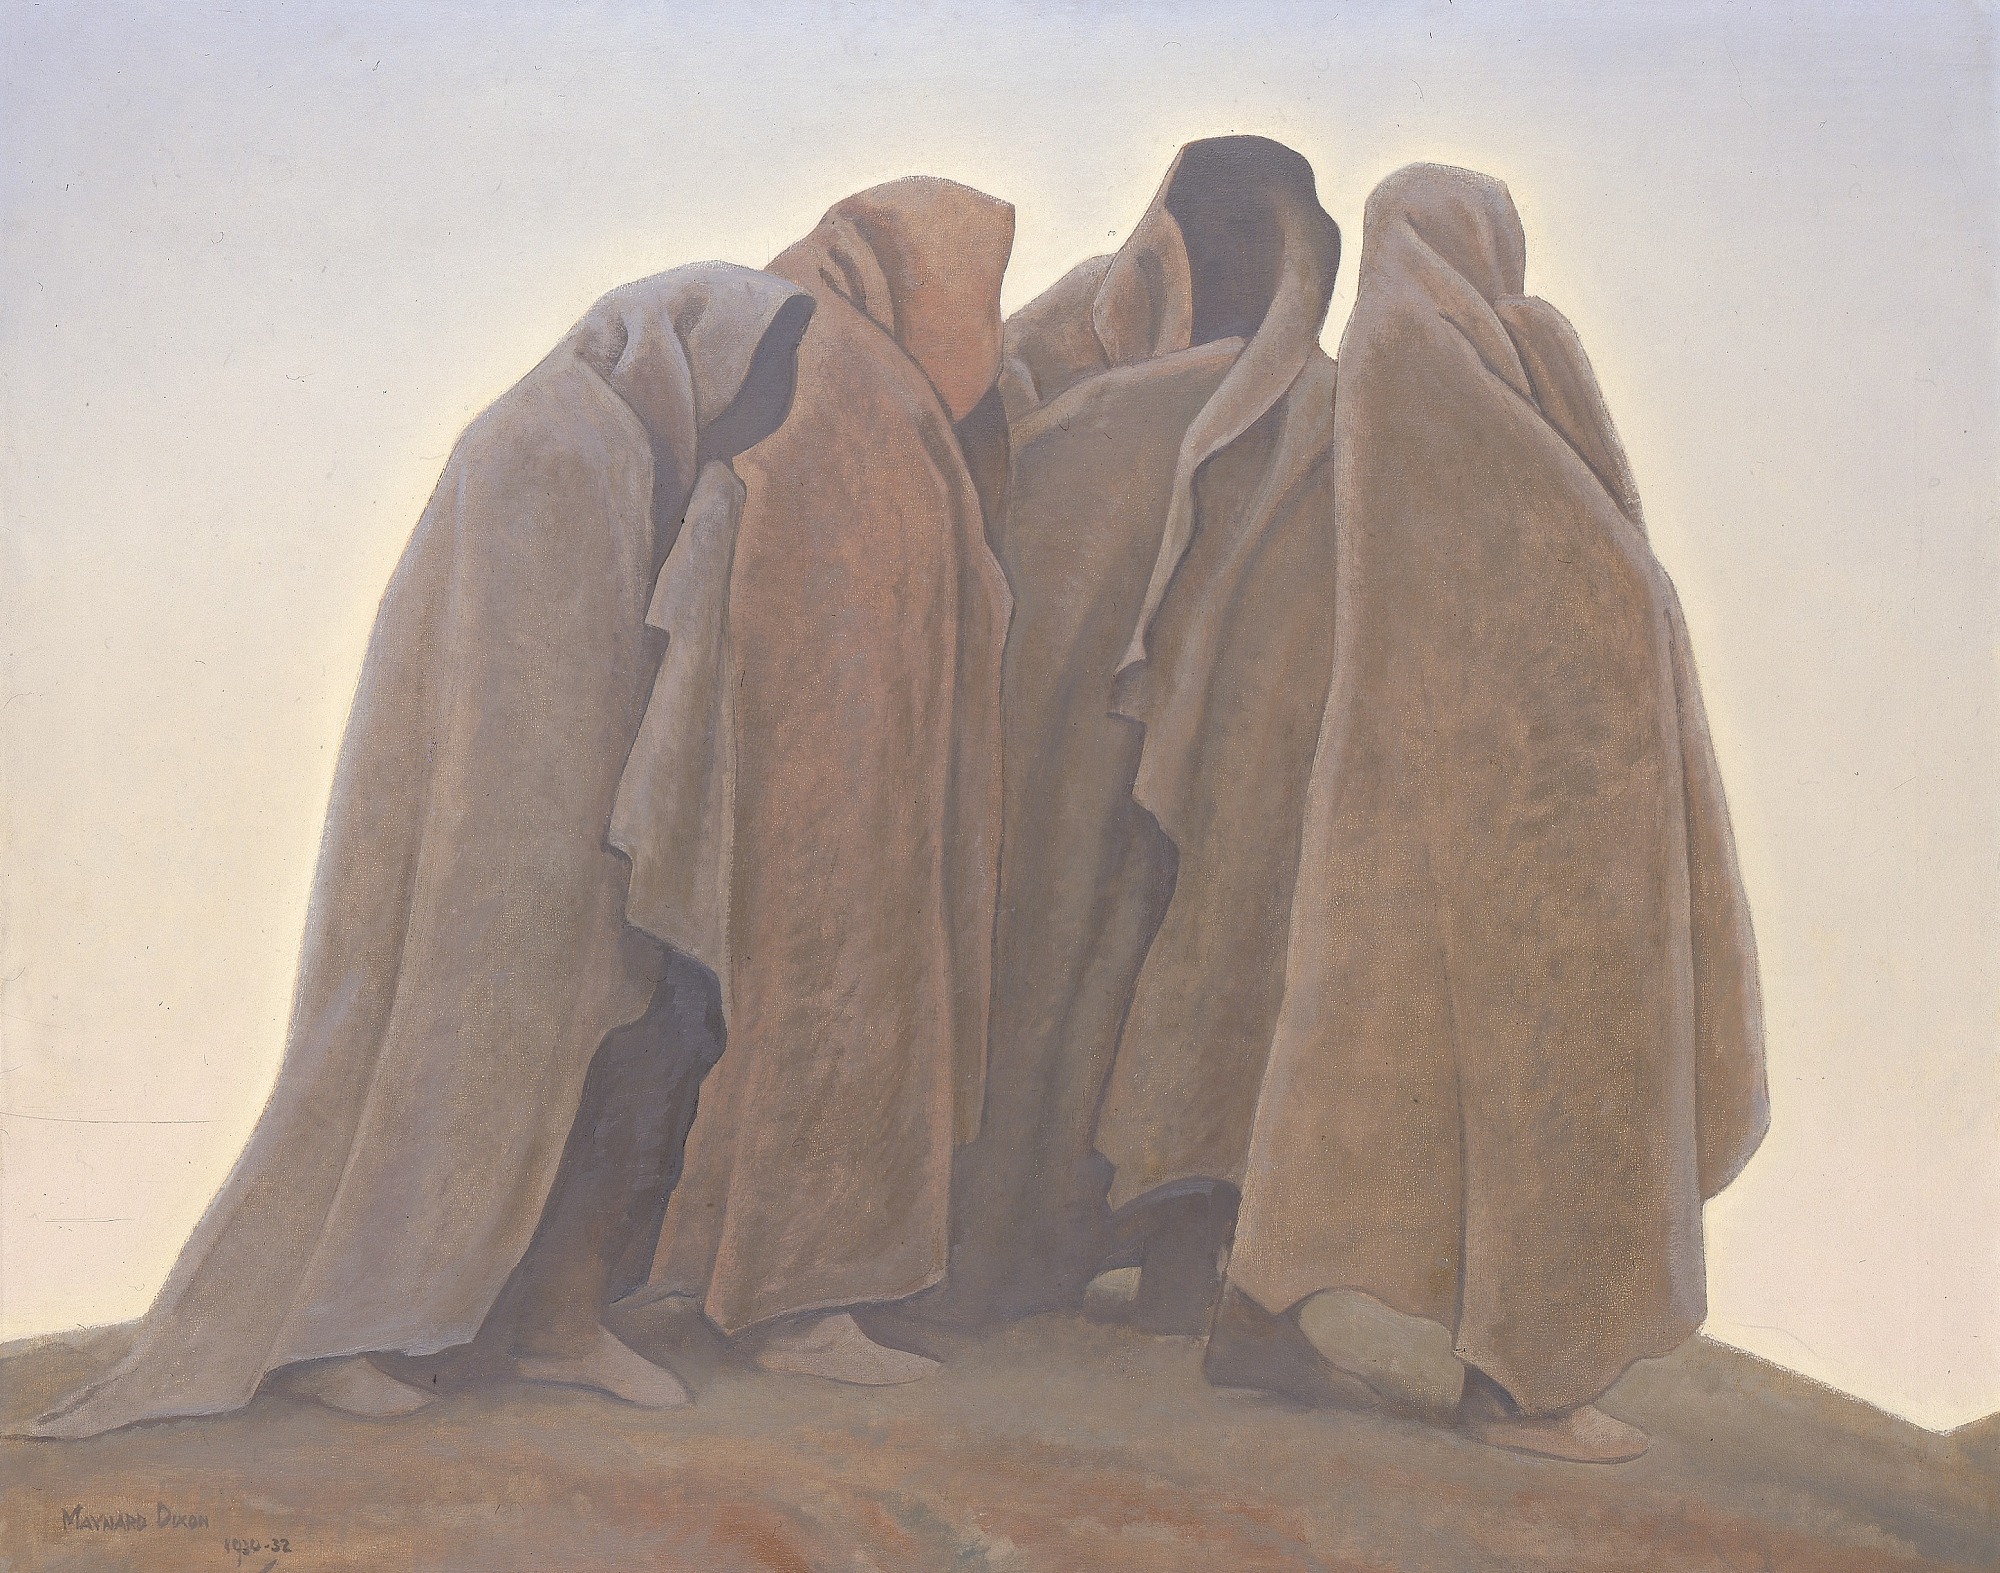 أشكال الخوف by Maynard Dixon - 1930-32م - 101.5 x 127.3 cm 